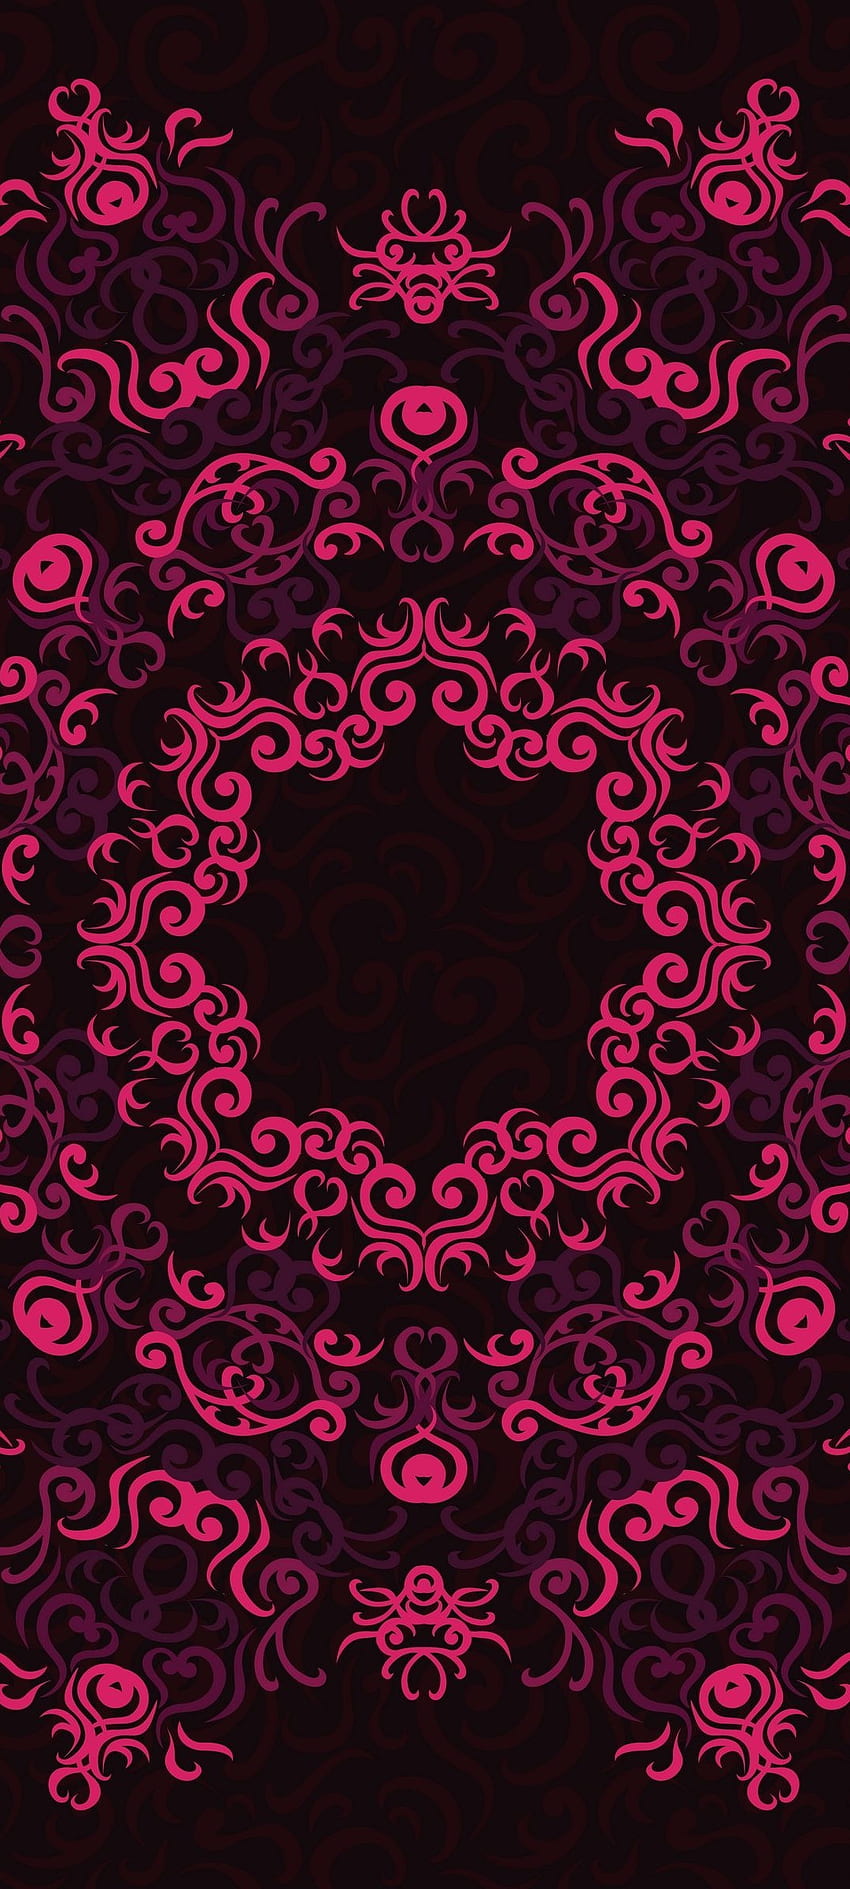 Amoled Black Pink Pattern [] untuk , Ponsel & Tablet Anda. Jelajahi Pola Hitam Dan Merah Muda. Latar Belakang Merah Muda Dan Hitam, Hitam dan Merah Muda, Merah Muda, 1080x2400 Amoled wallpaper ponsel HD